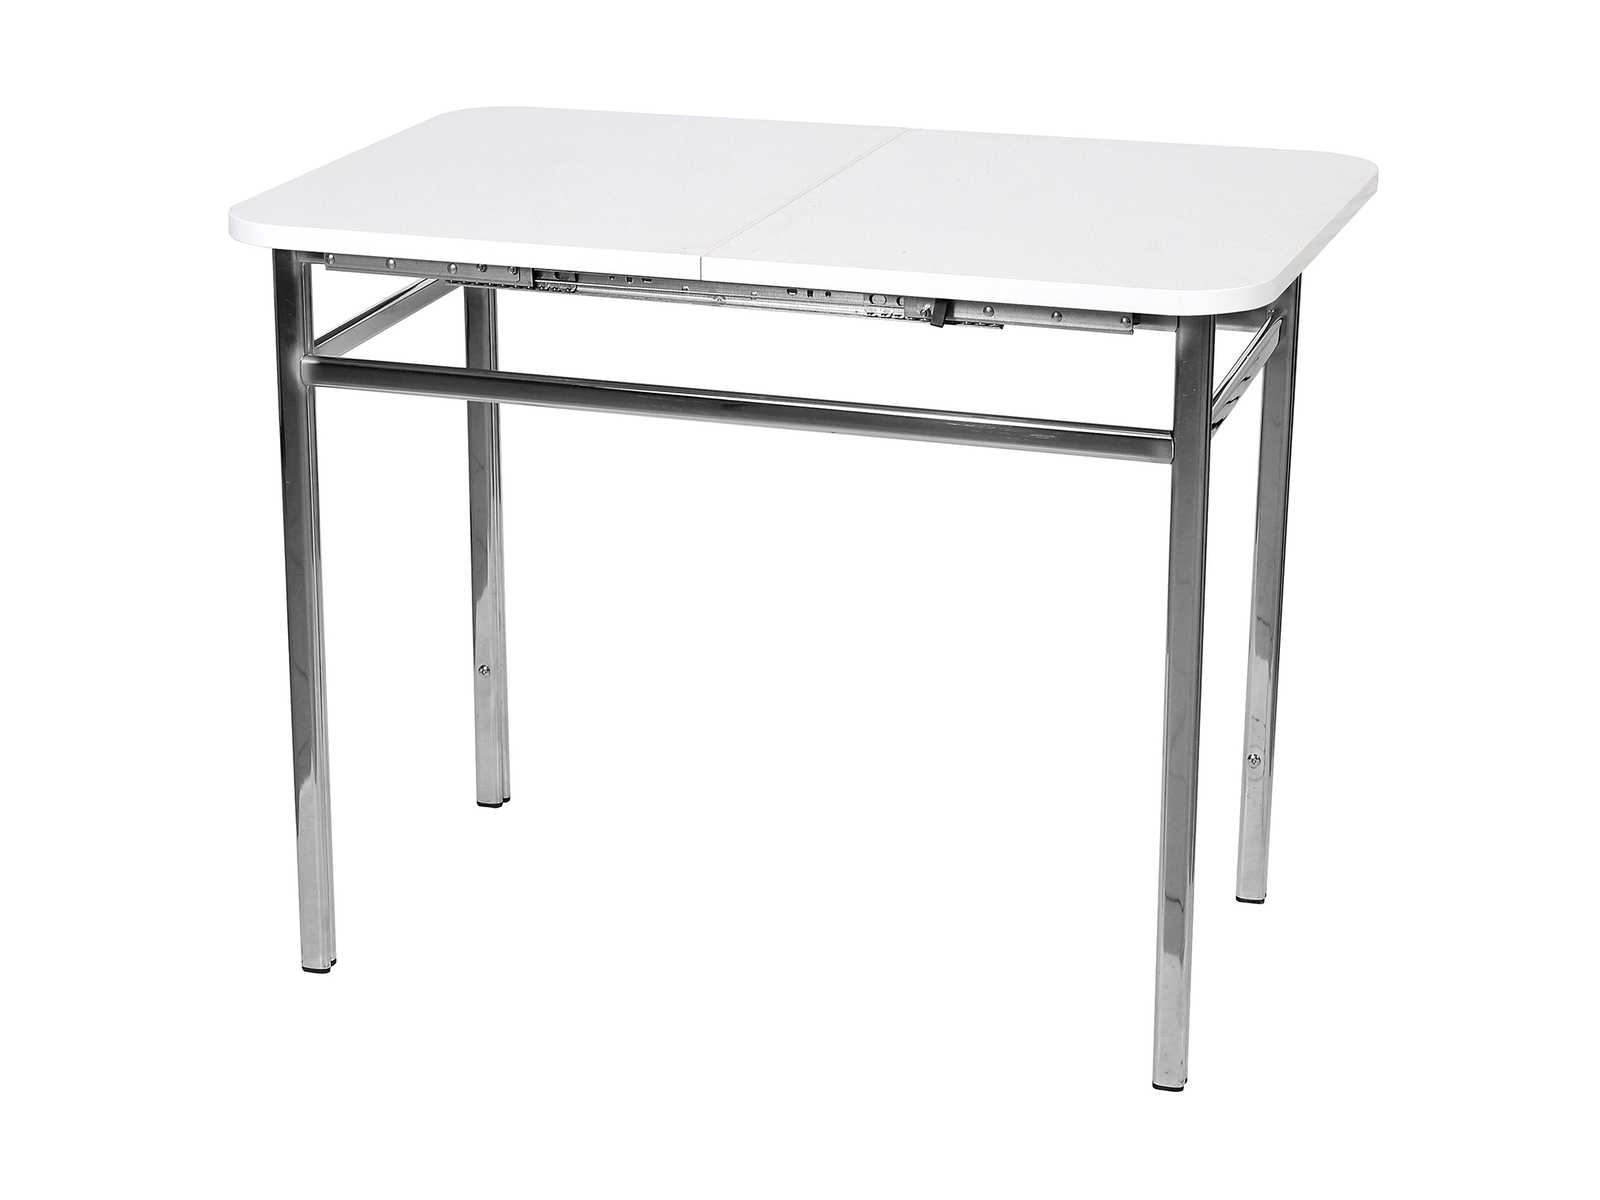 Узкий кухонный стол ширина 60 см